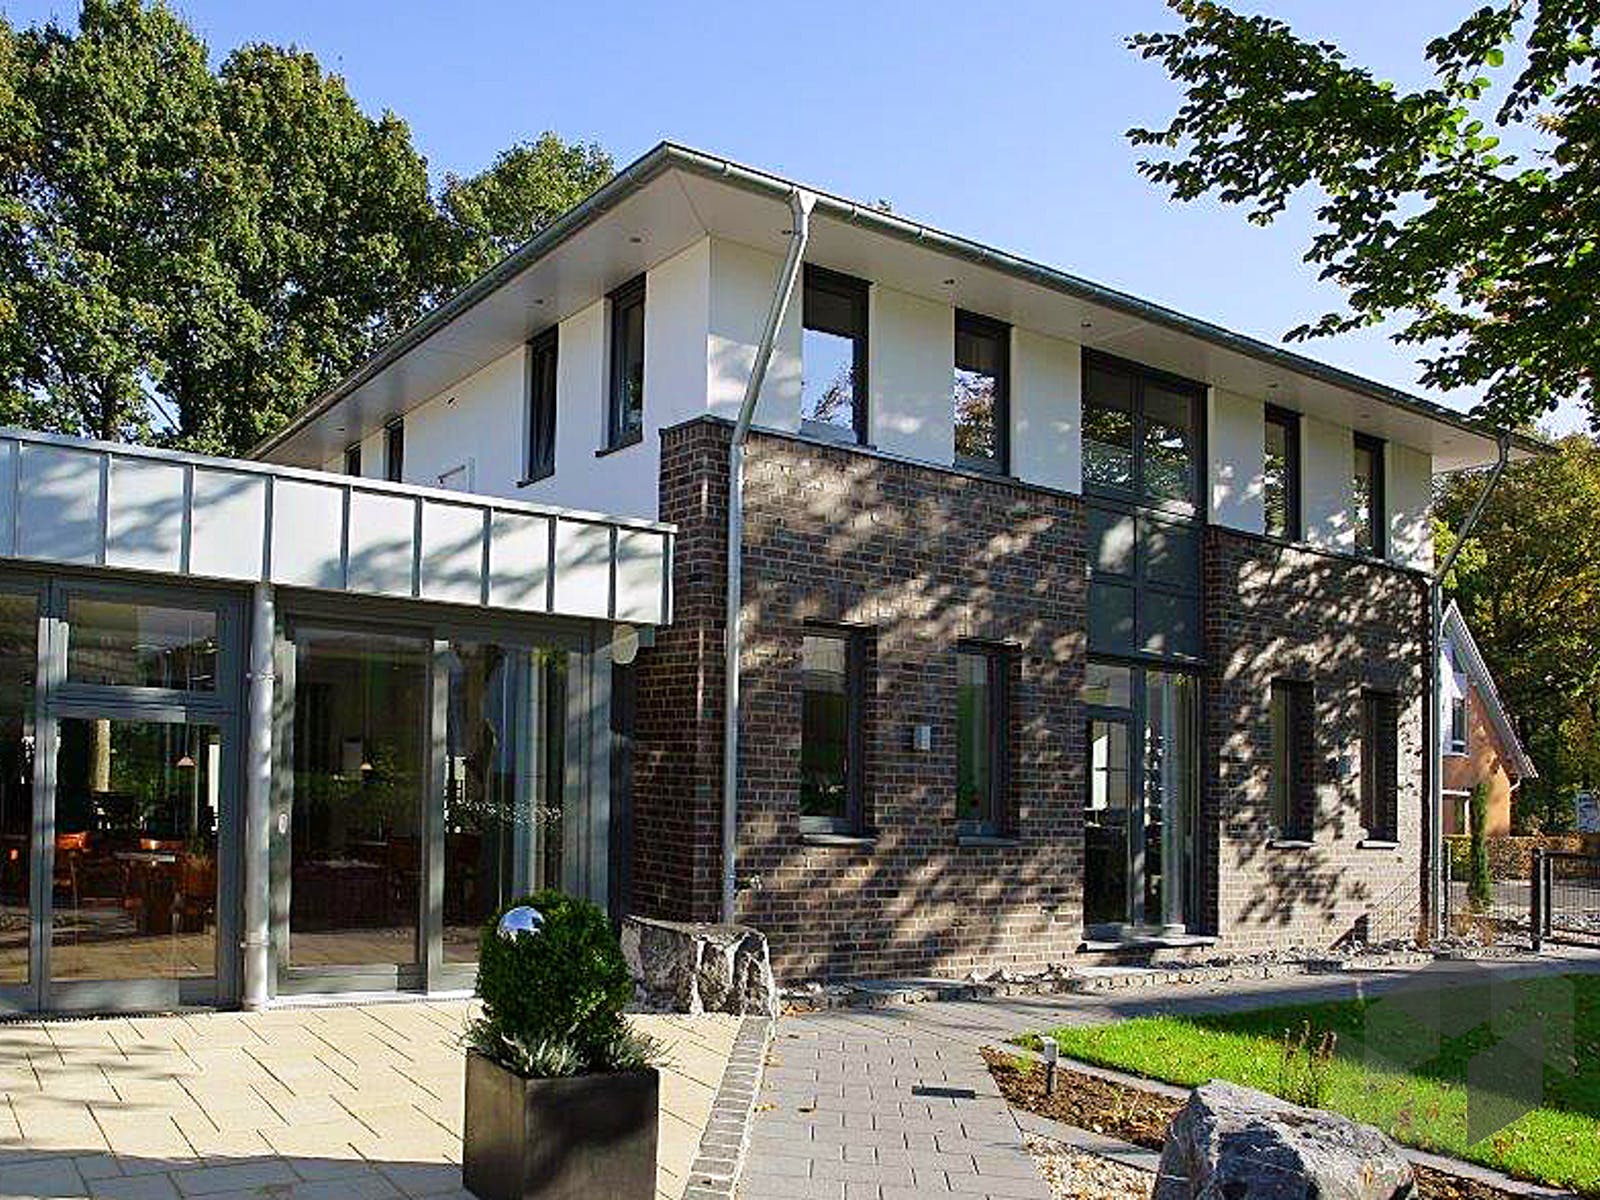 29 Top Photos Gussek Haus Nordhorn - Fertighaus Hersteller Gussek Haus Bautipps De